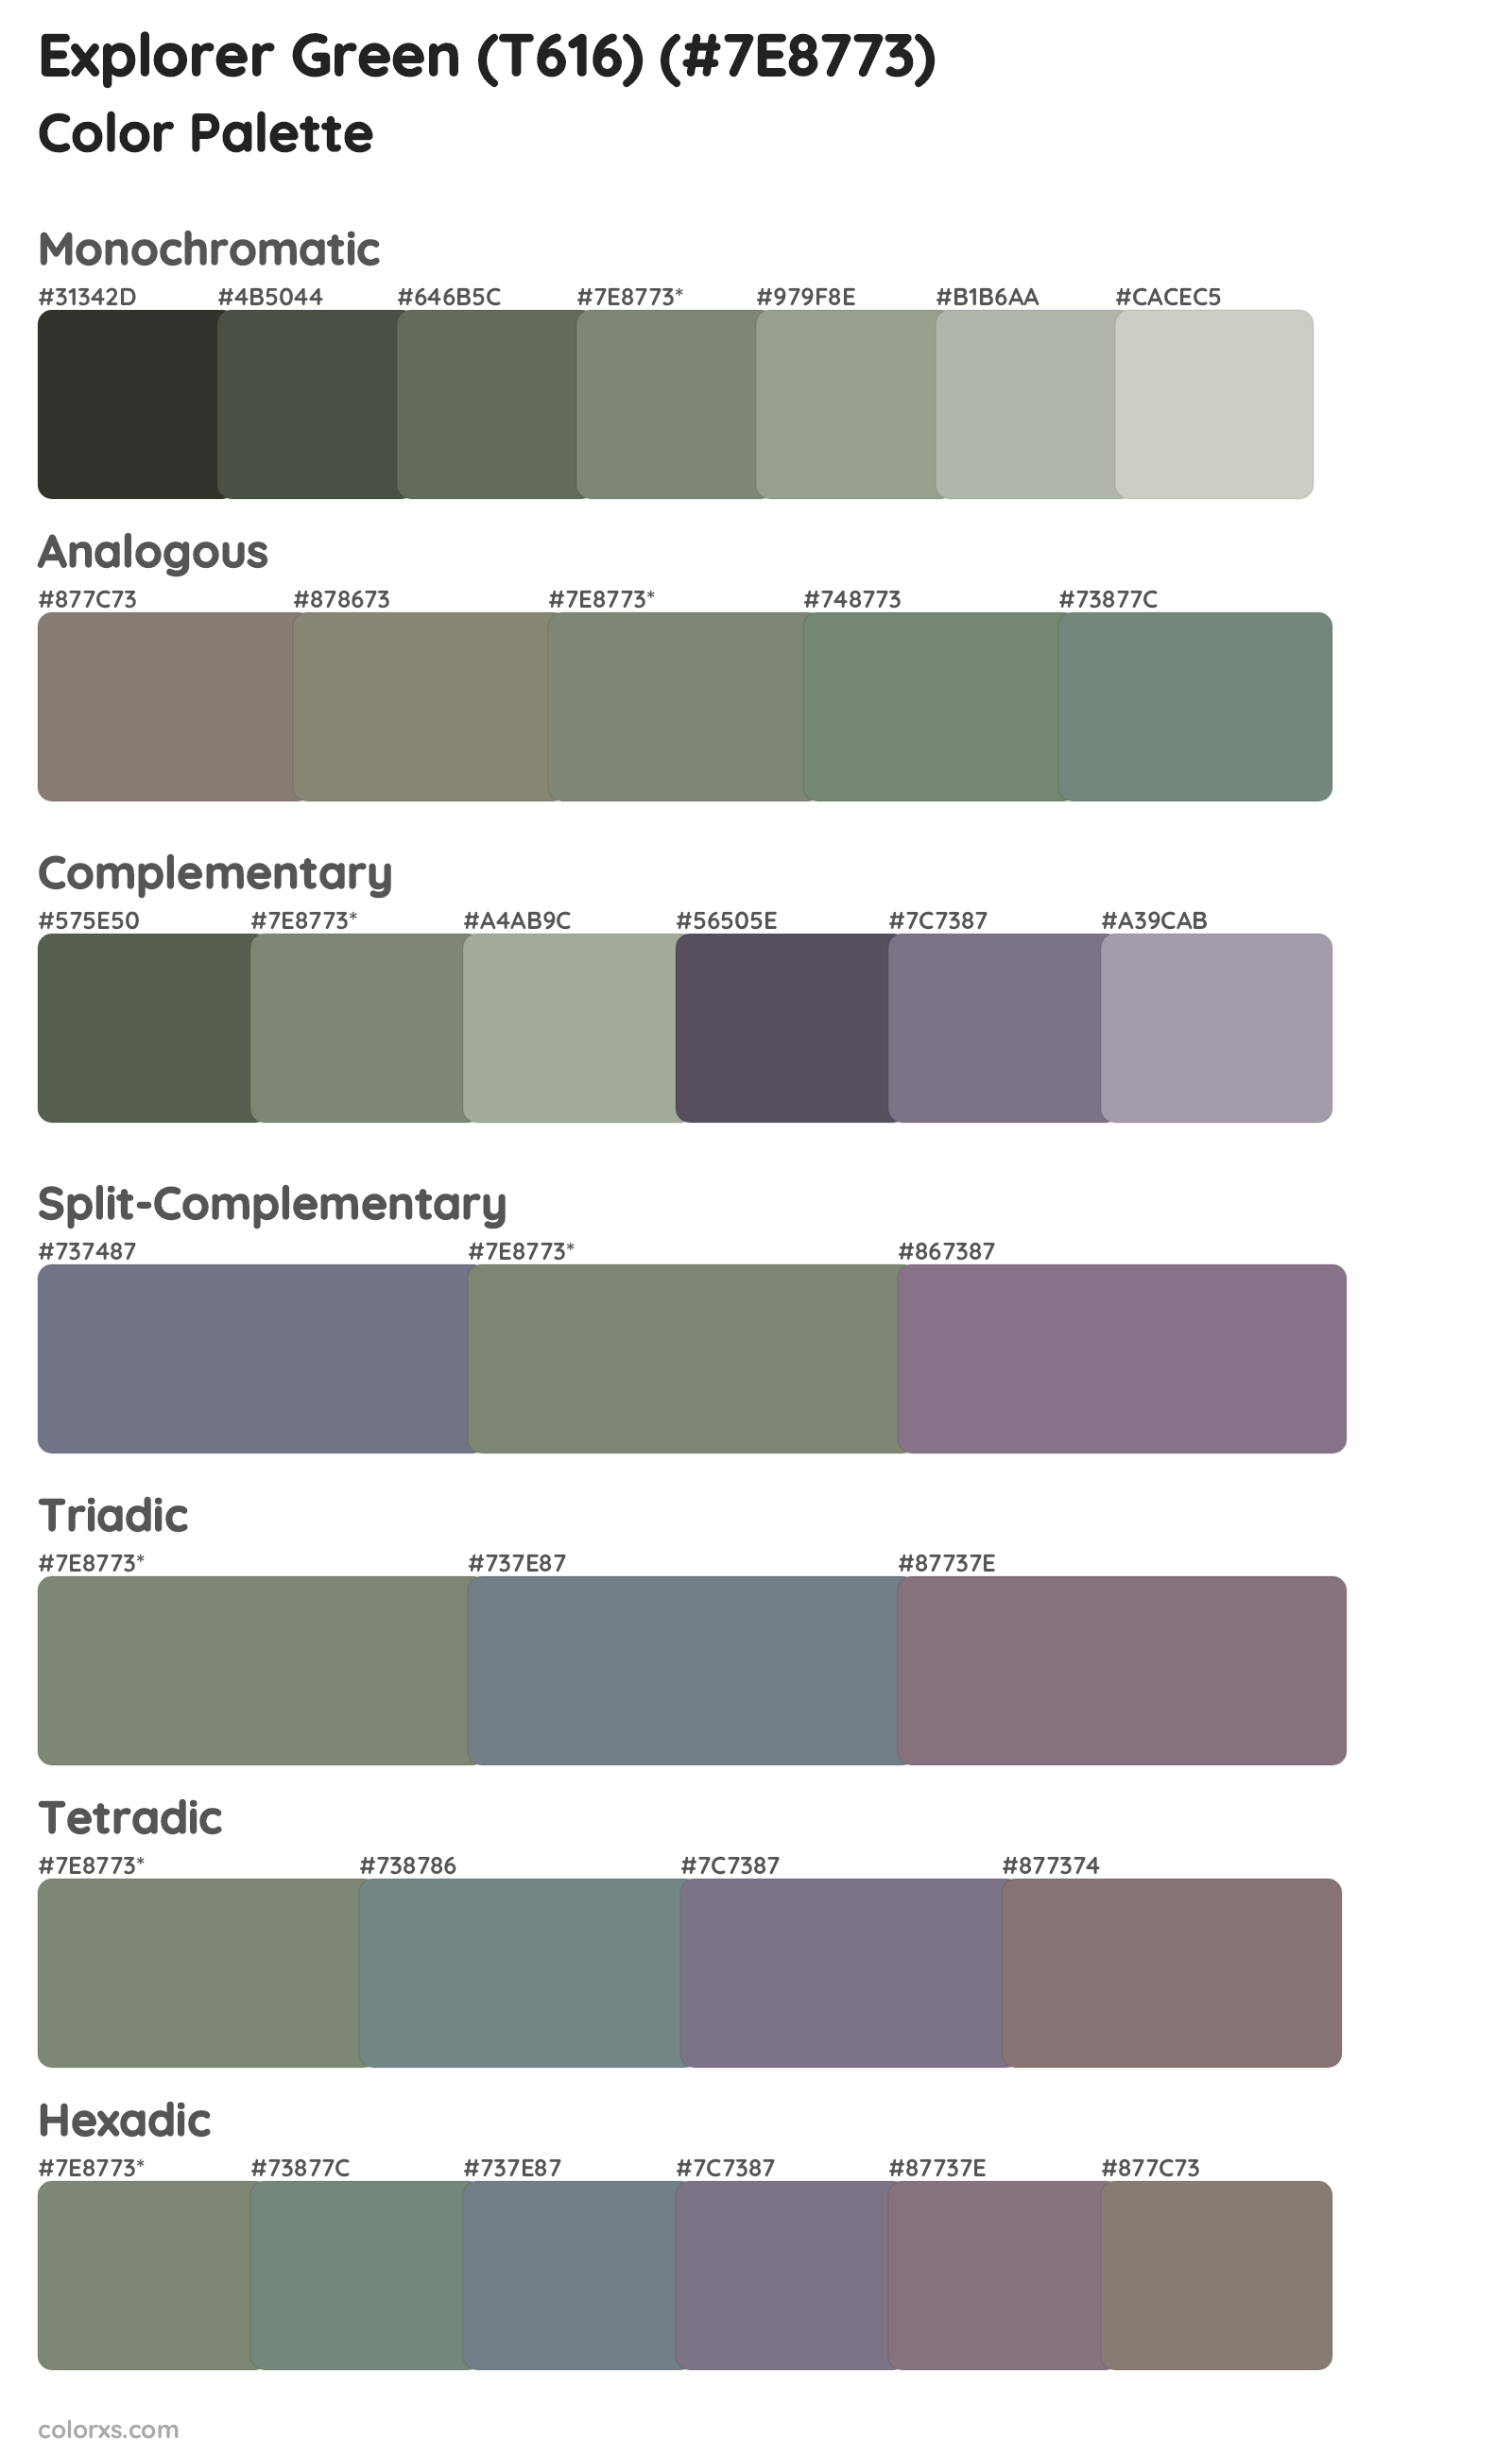 Explorer Green (T616) Color Scheme Palettes